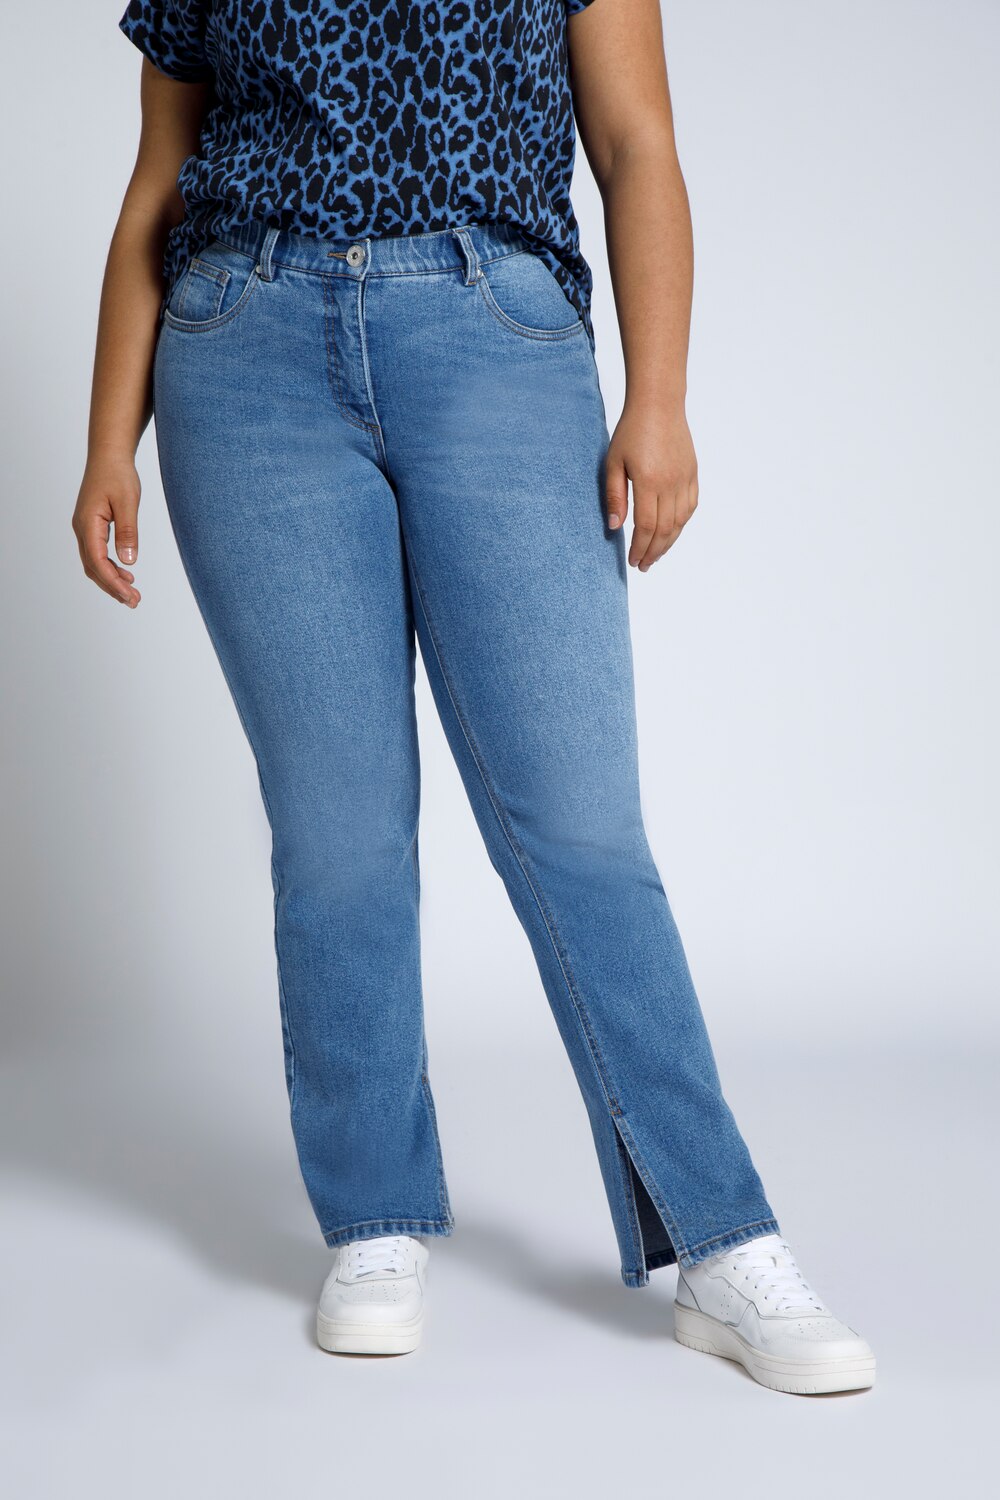 Grote Maten jeans, Dames, blauw, Maat: 50, Katoen, Studio Untold